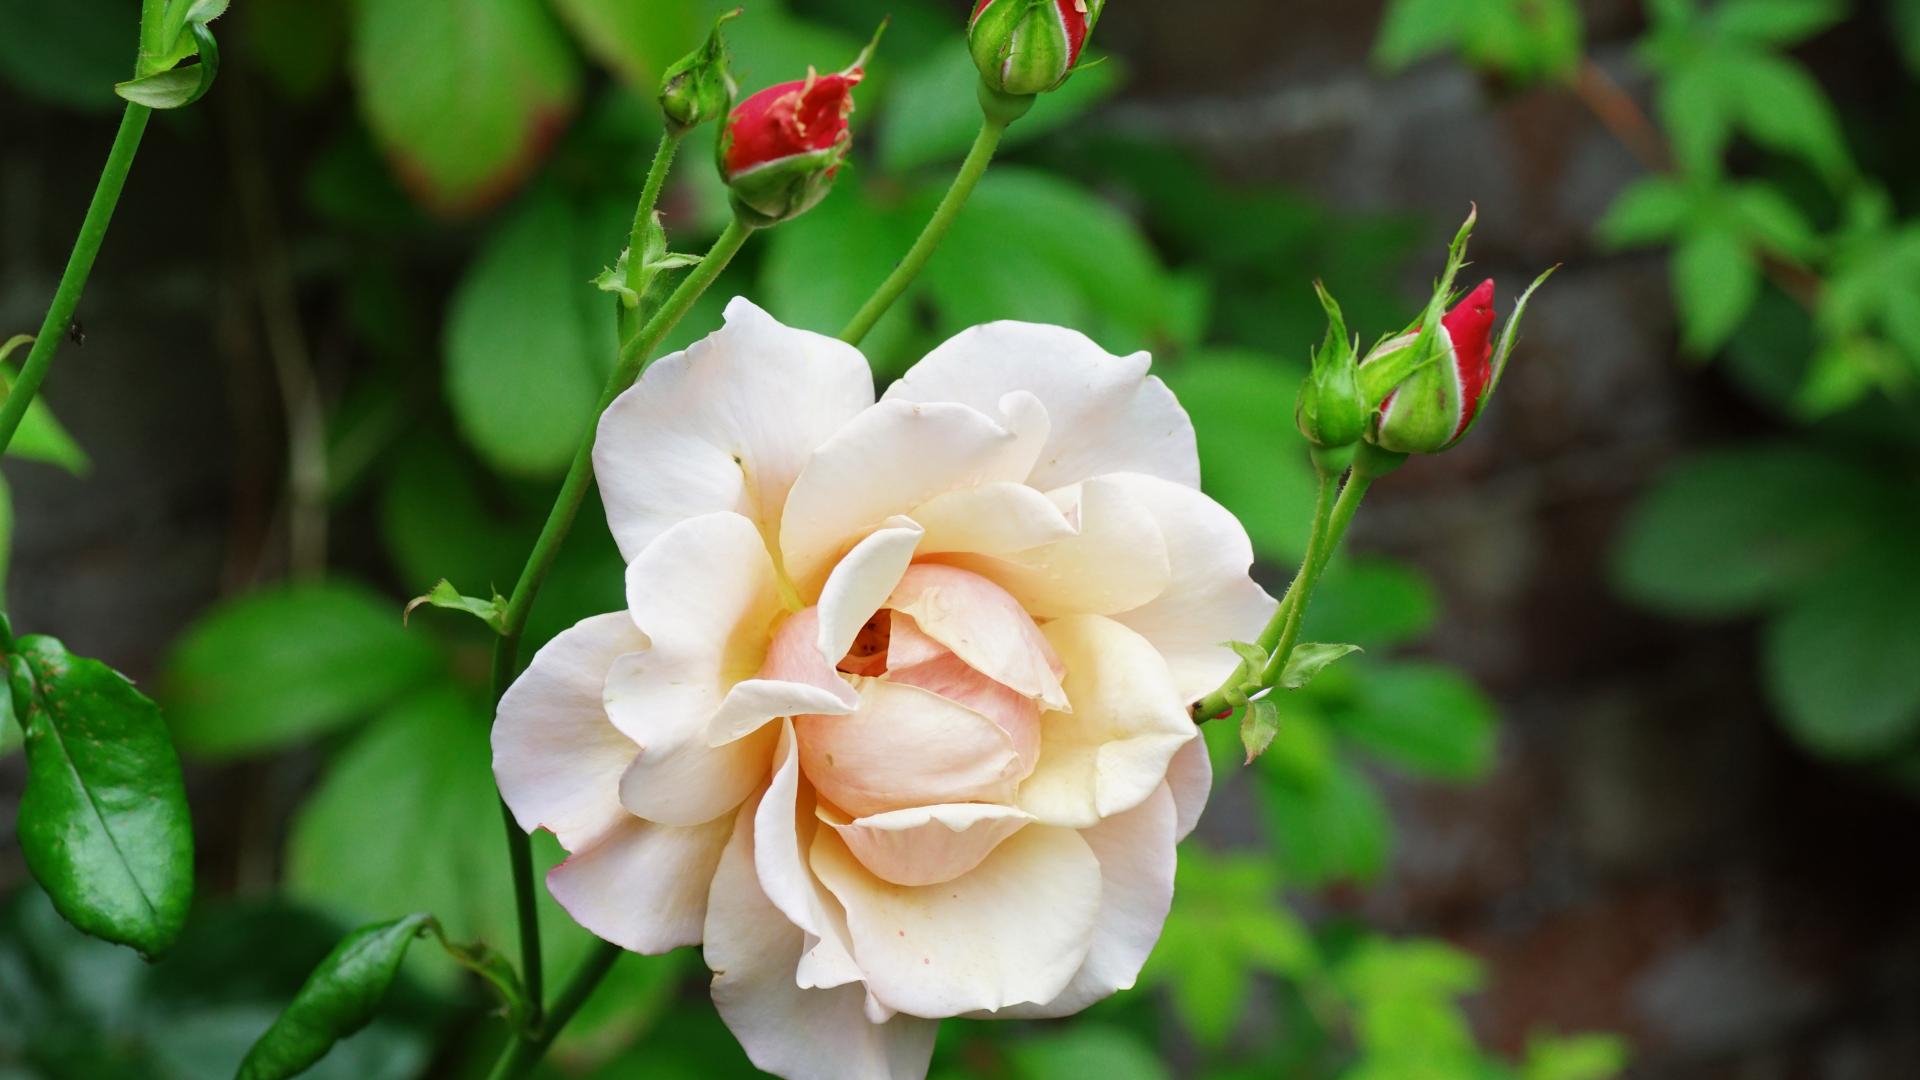 rosentapete rosentapete,blume,blühende pflanze,julia kind stand auf,blütenblatt,floribunda